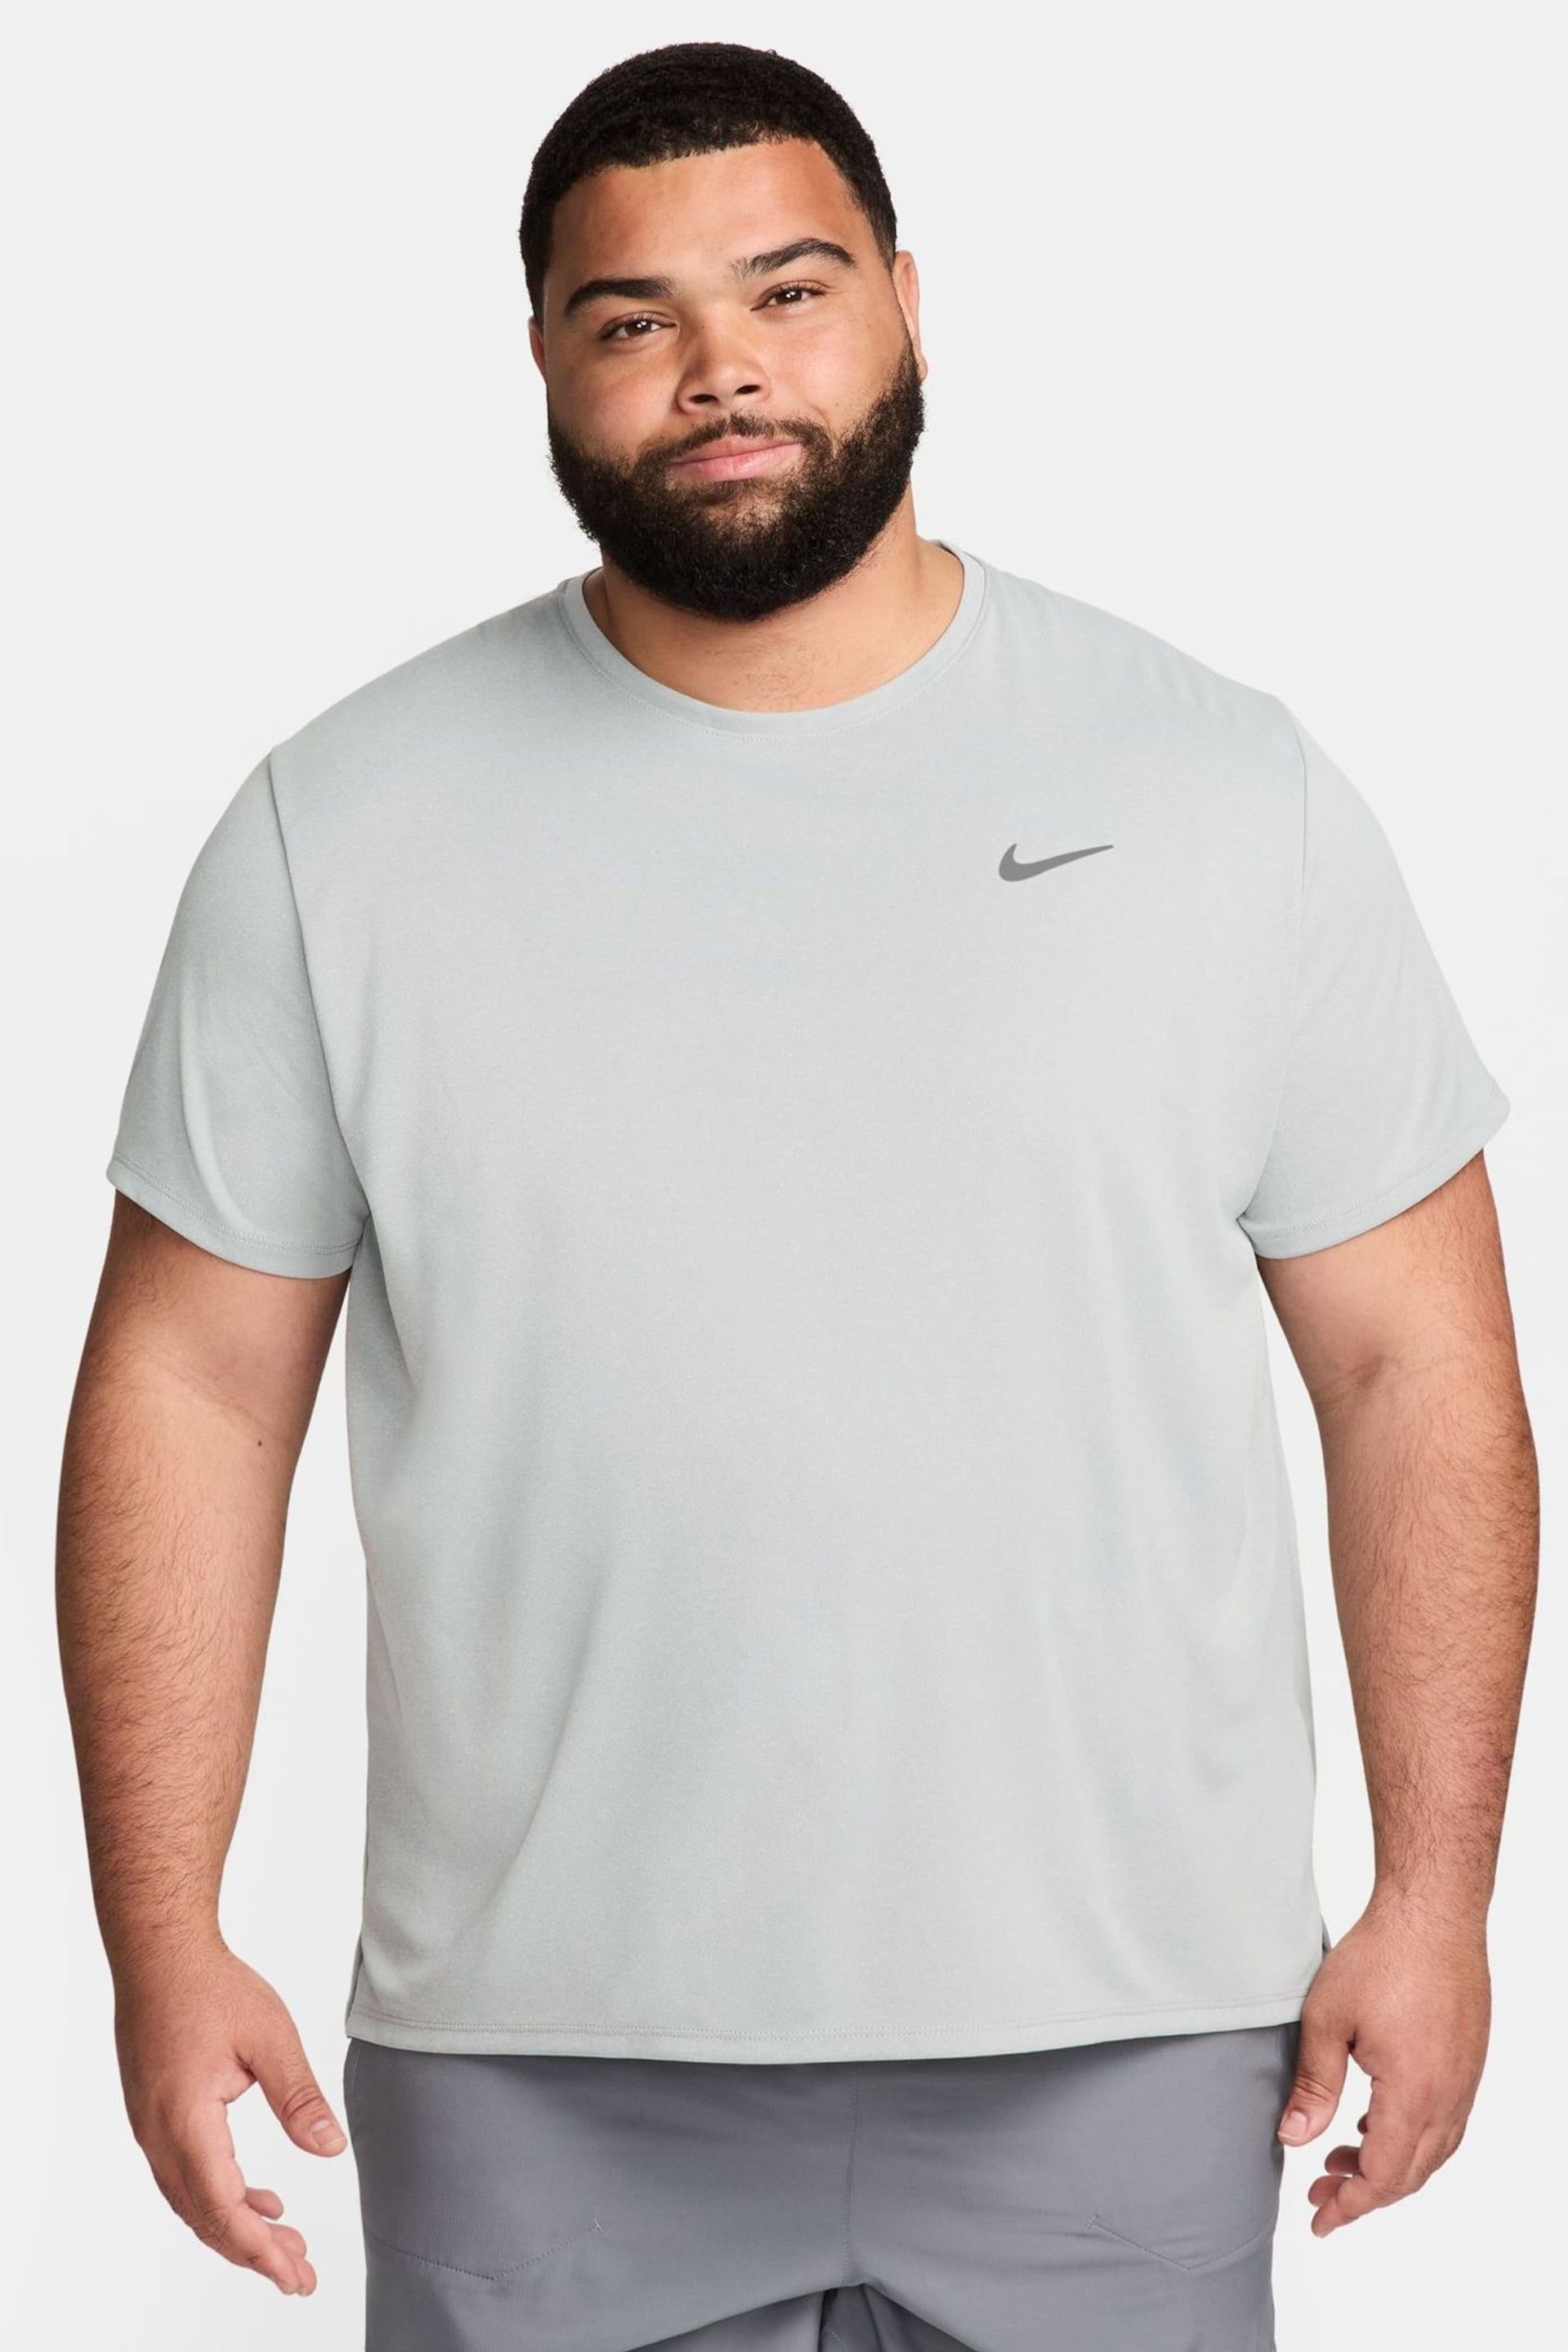 Nike Light Grey Miler Dri-FIT UV Running T-Shirt - Image 9 of 13